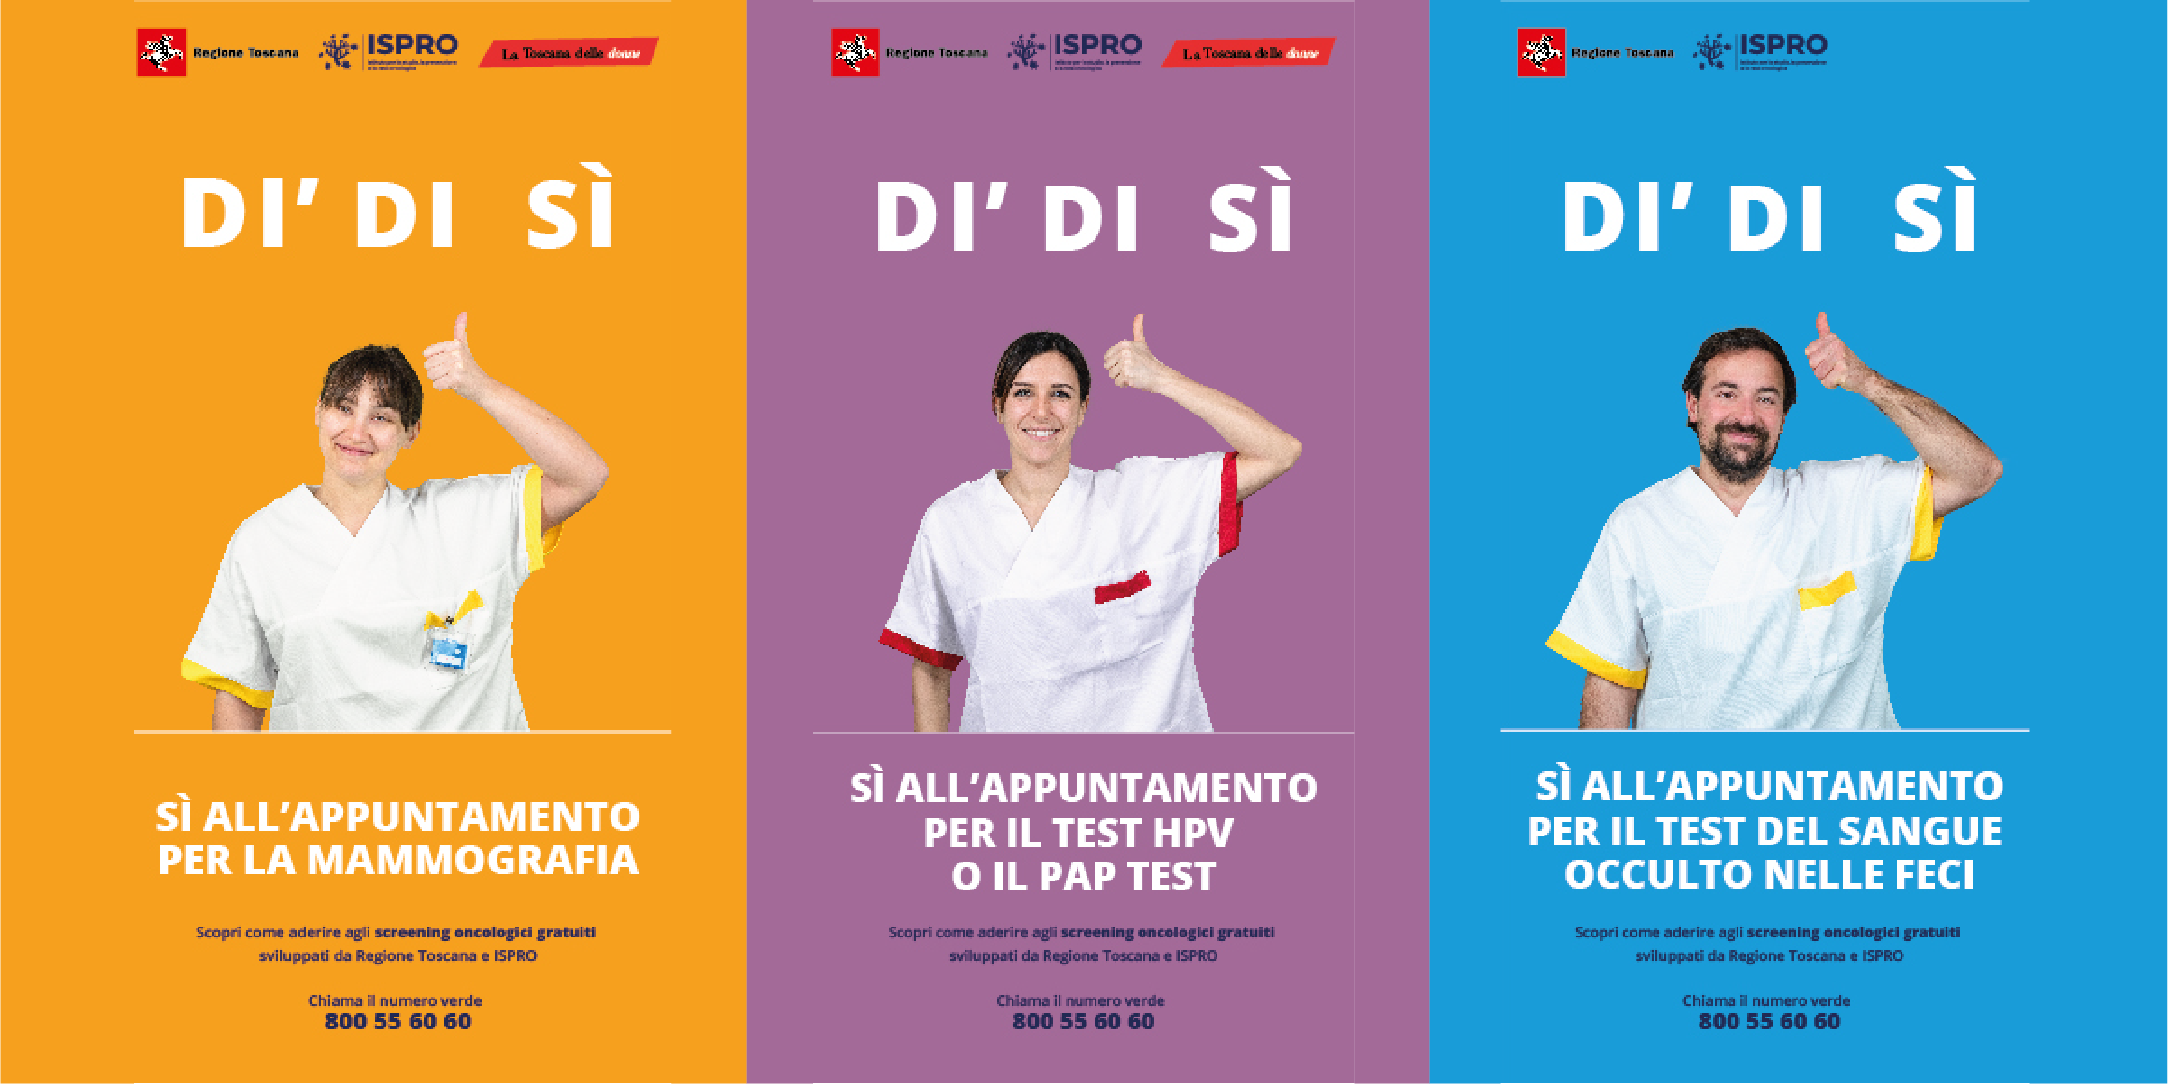 Dì di sì: aderisci agli screening oncologici della Regione Toscana